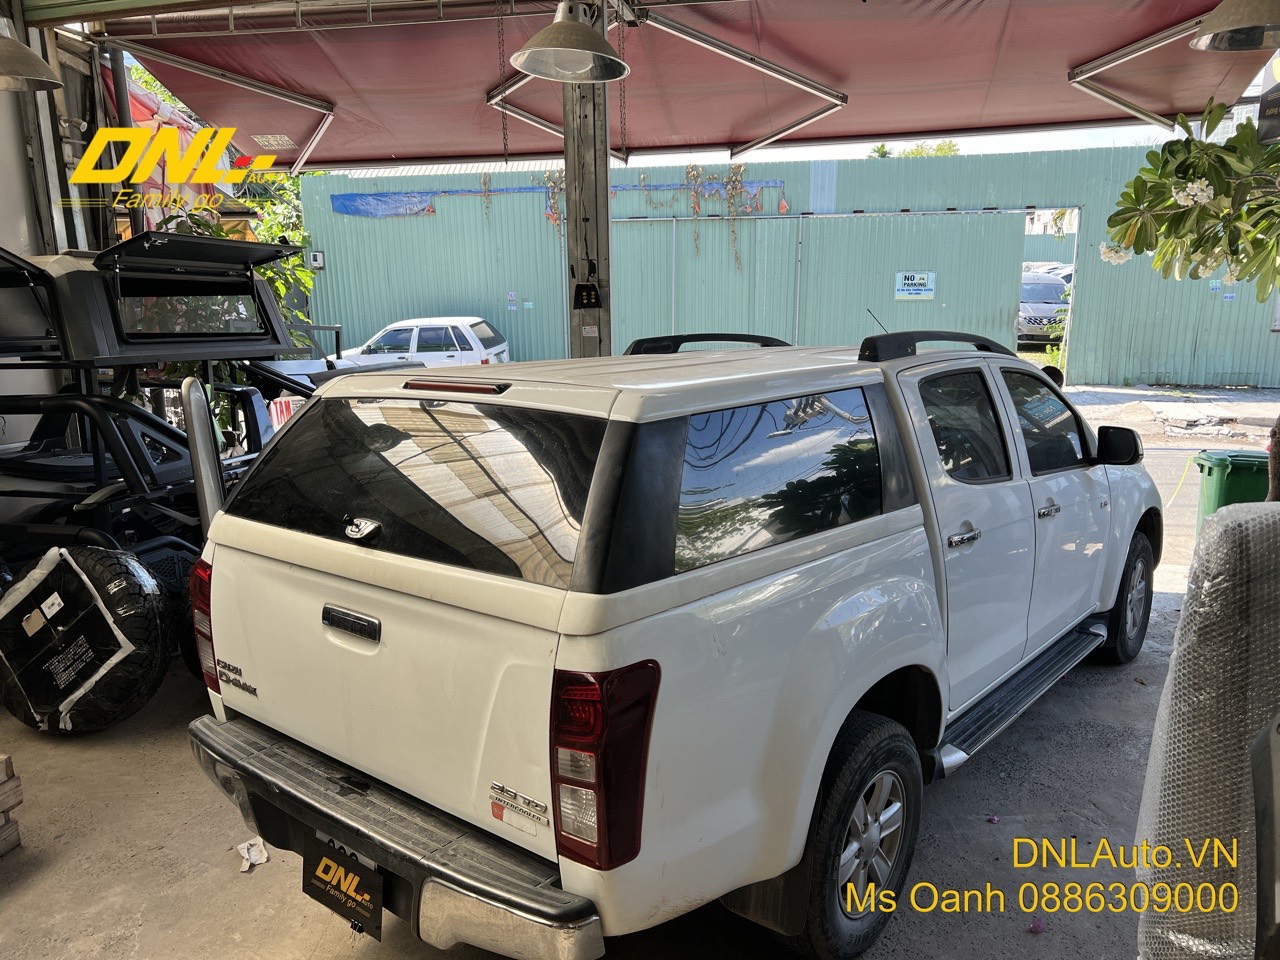 thanh lý nắp thùng cao không đèn cho xe bán tải Isuzu Dmax đời 2012-2020, màu trắng. Tình trạng còn hoạt động tốt, 